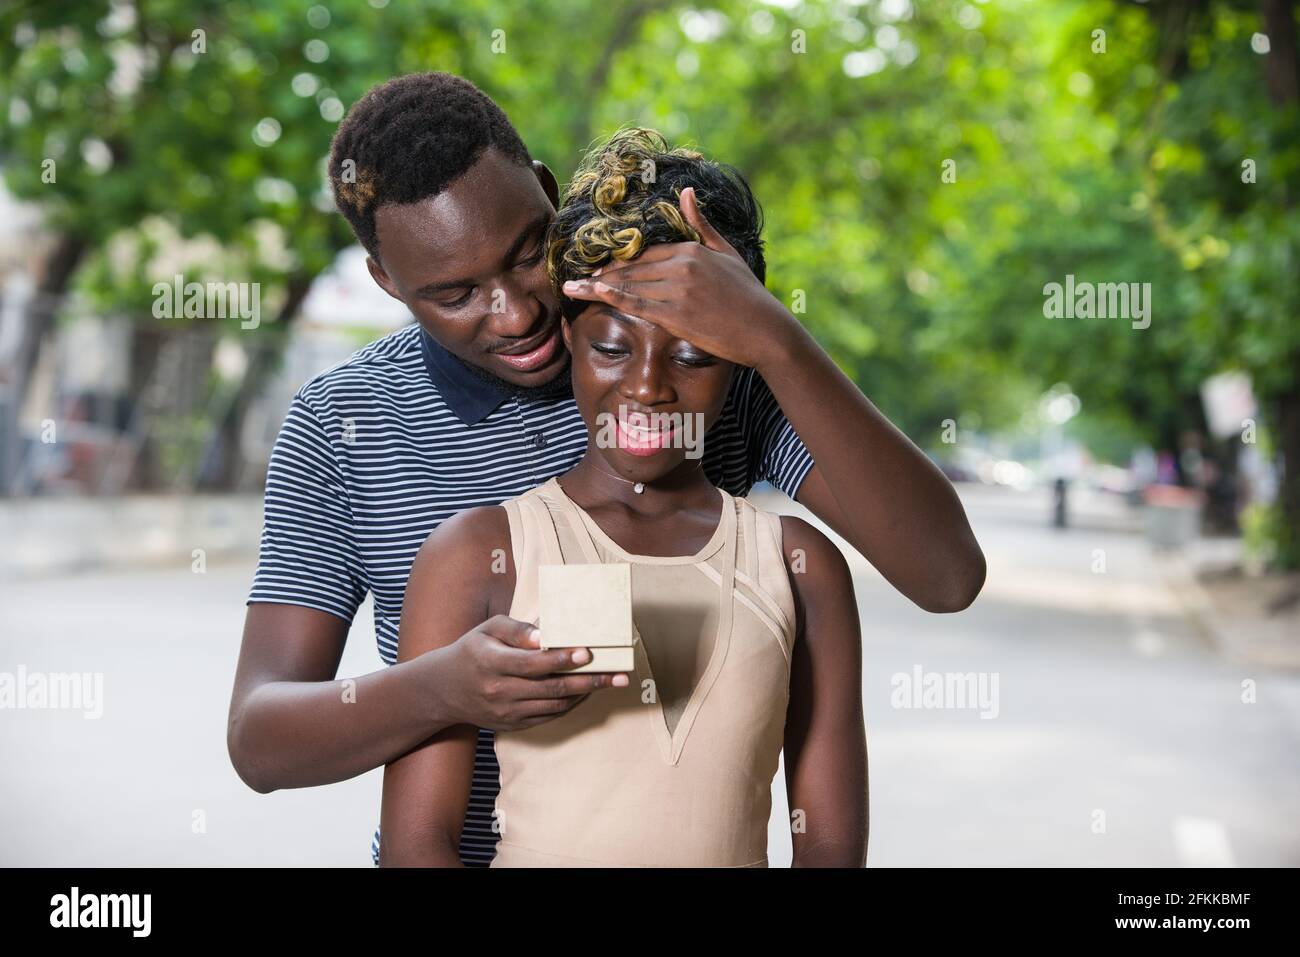 Ein verliebtes Paar, das auf der Straße ging, überraschte ihn, indem er seiner Freundin einen Ring anbot. Stockfoto